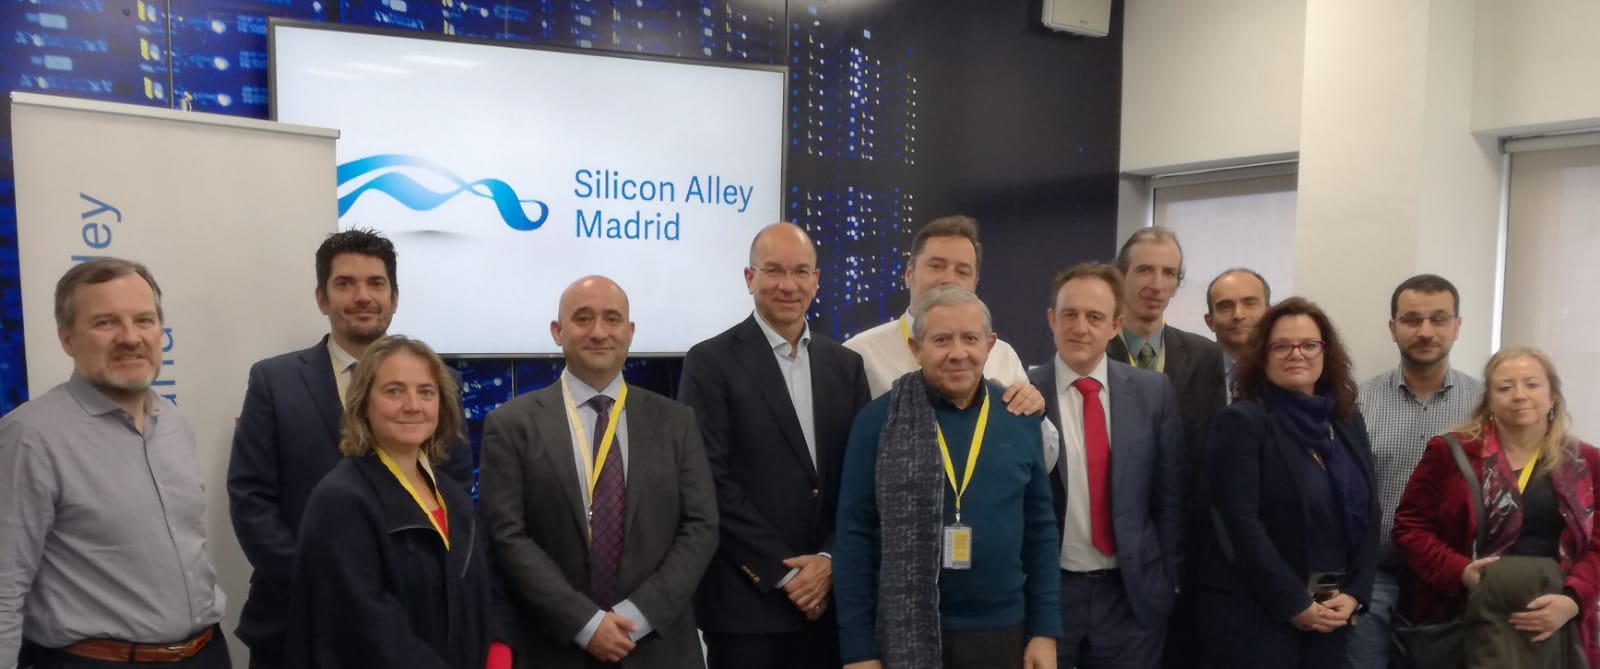 Silicon Alley Madrid - Asamblea Enero 2019